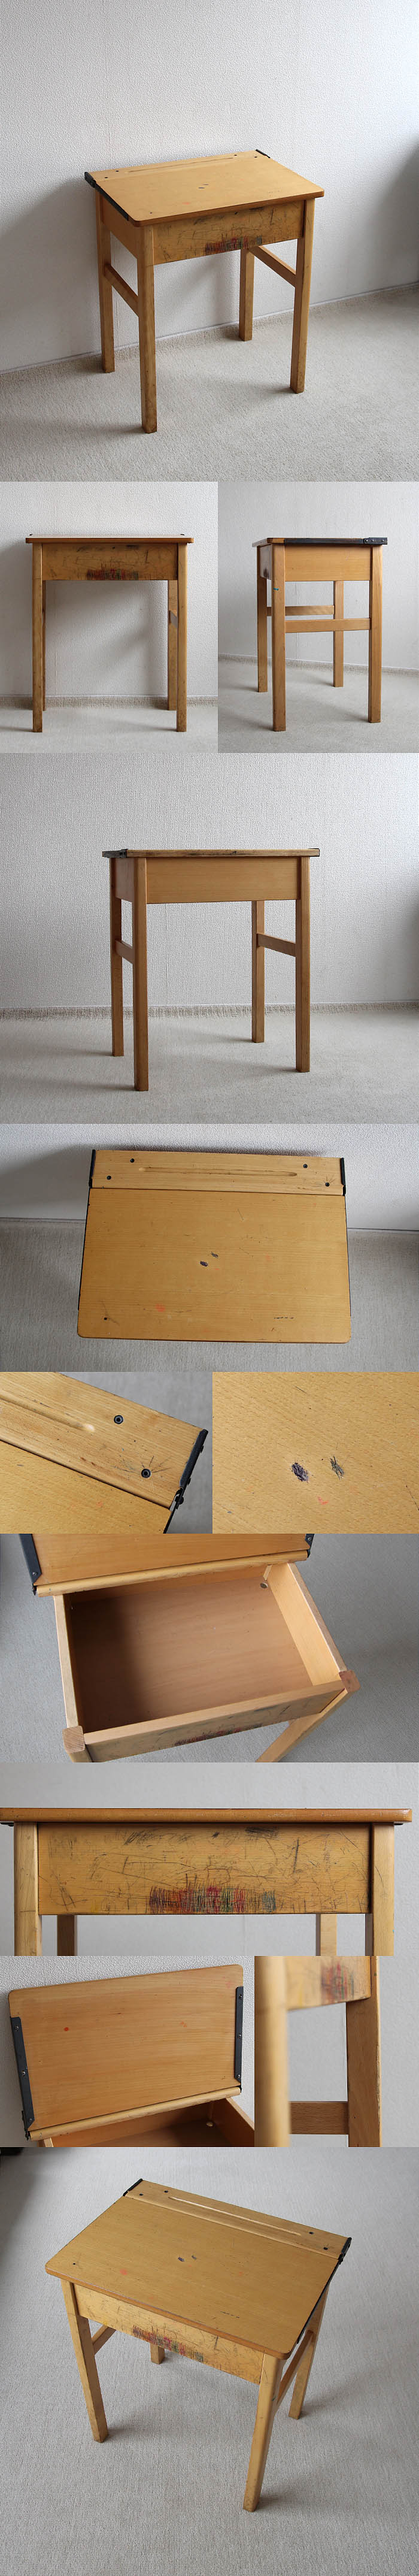 イギリス ヴィンテージ スクールデスク 学習机 木製 収納ボックス